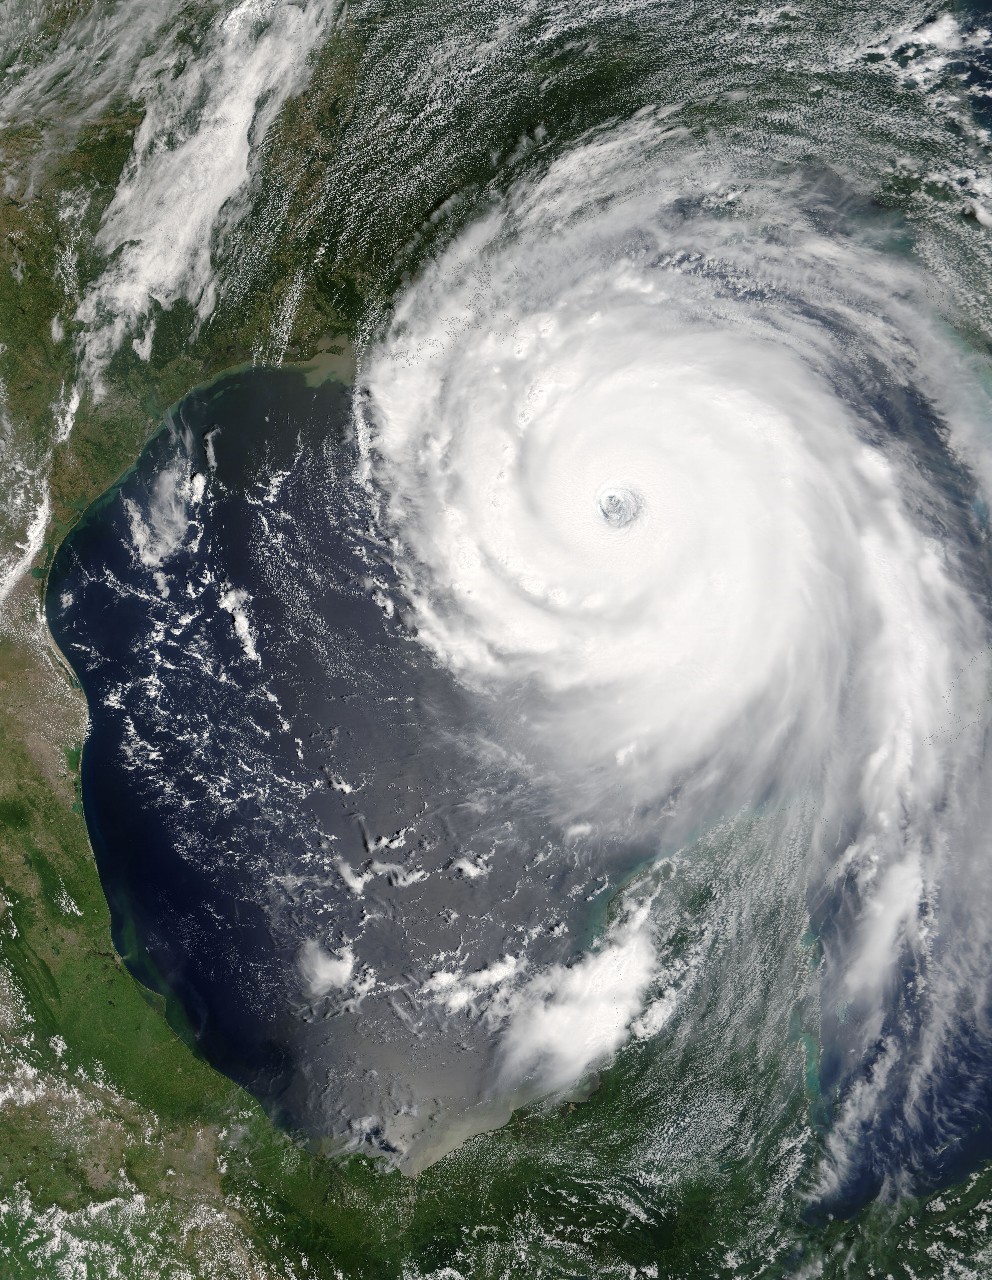 ハリケーンは女性の名前を付けると被害が大きい 雑学ネタ帳